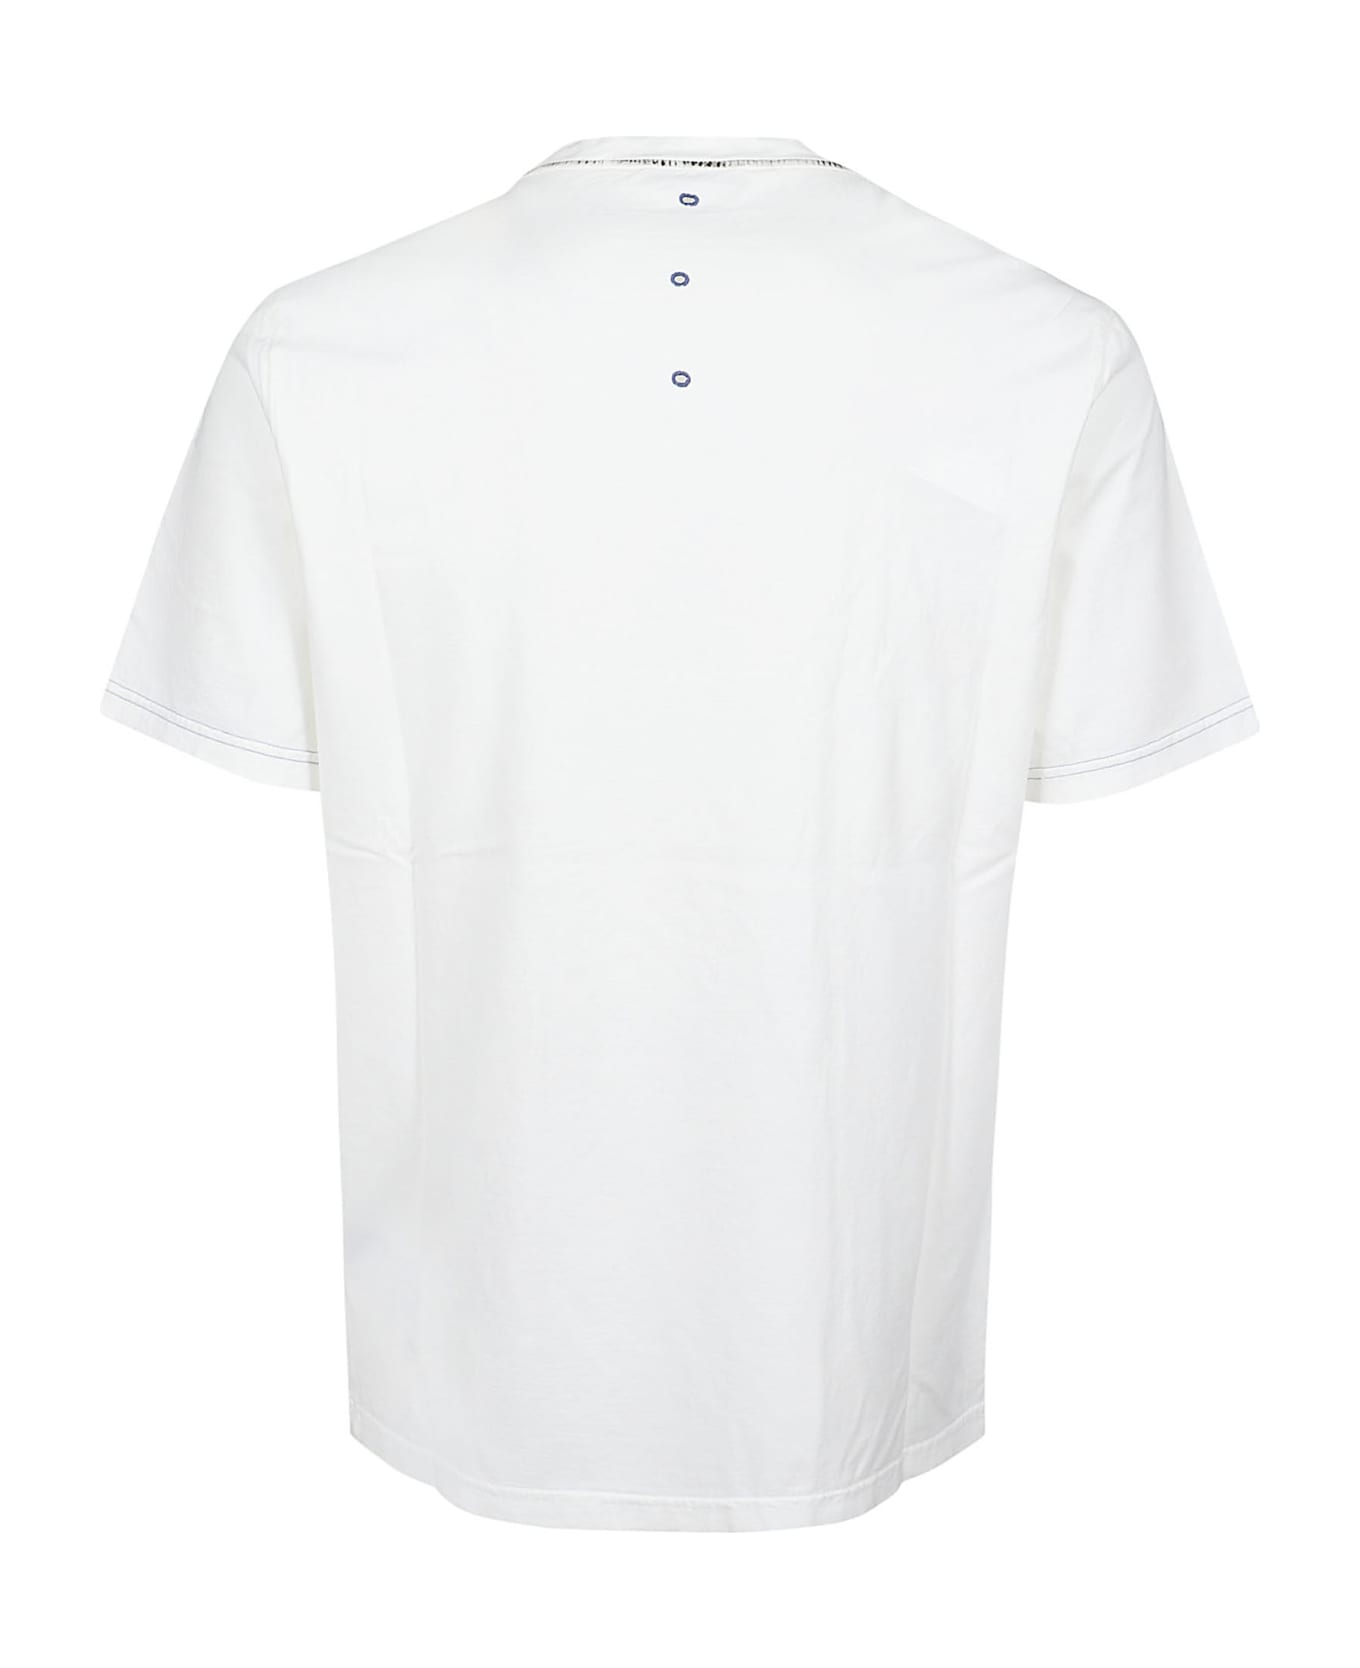 Premiata Neverwhite T-shirt - White シャツ